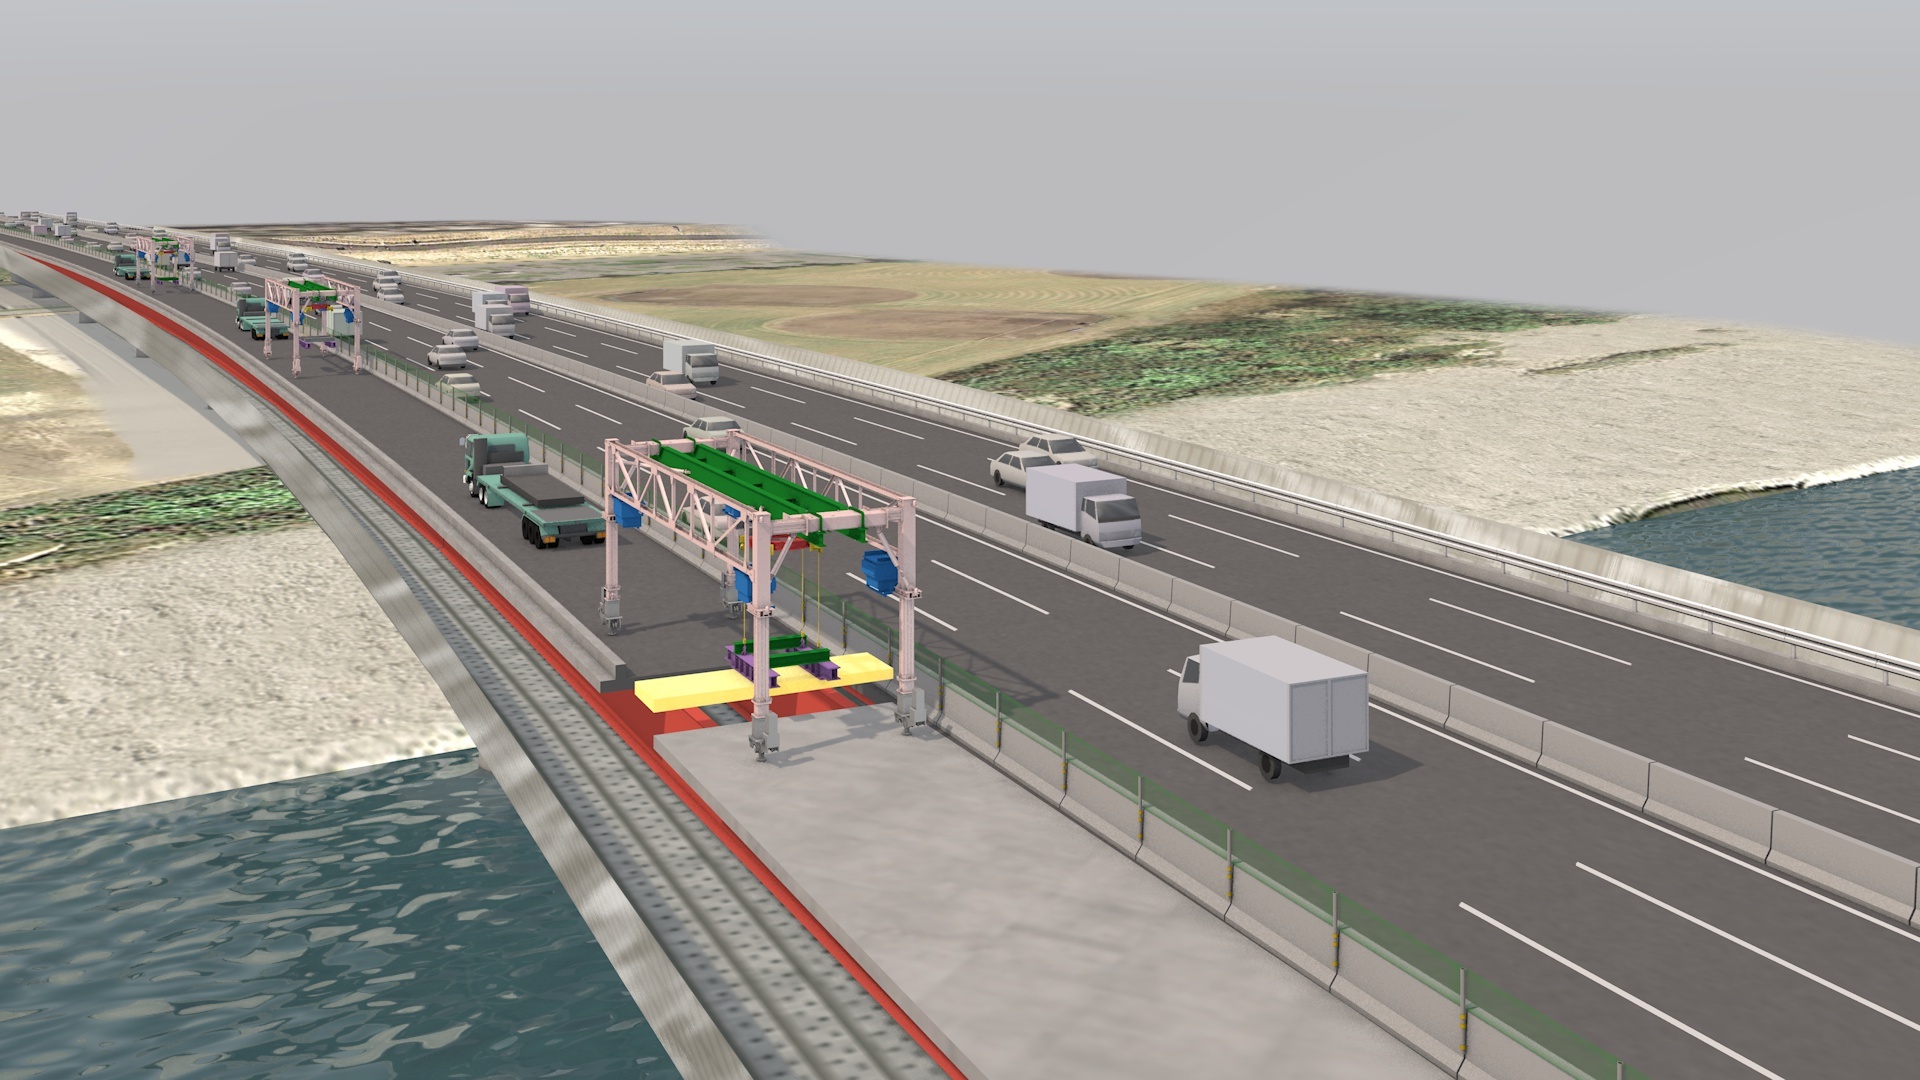 東名多摩川橋の分割断面床版取替および交通規制(6車線確保)のイメージ